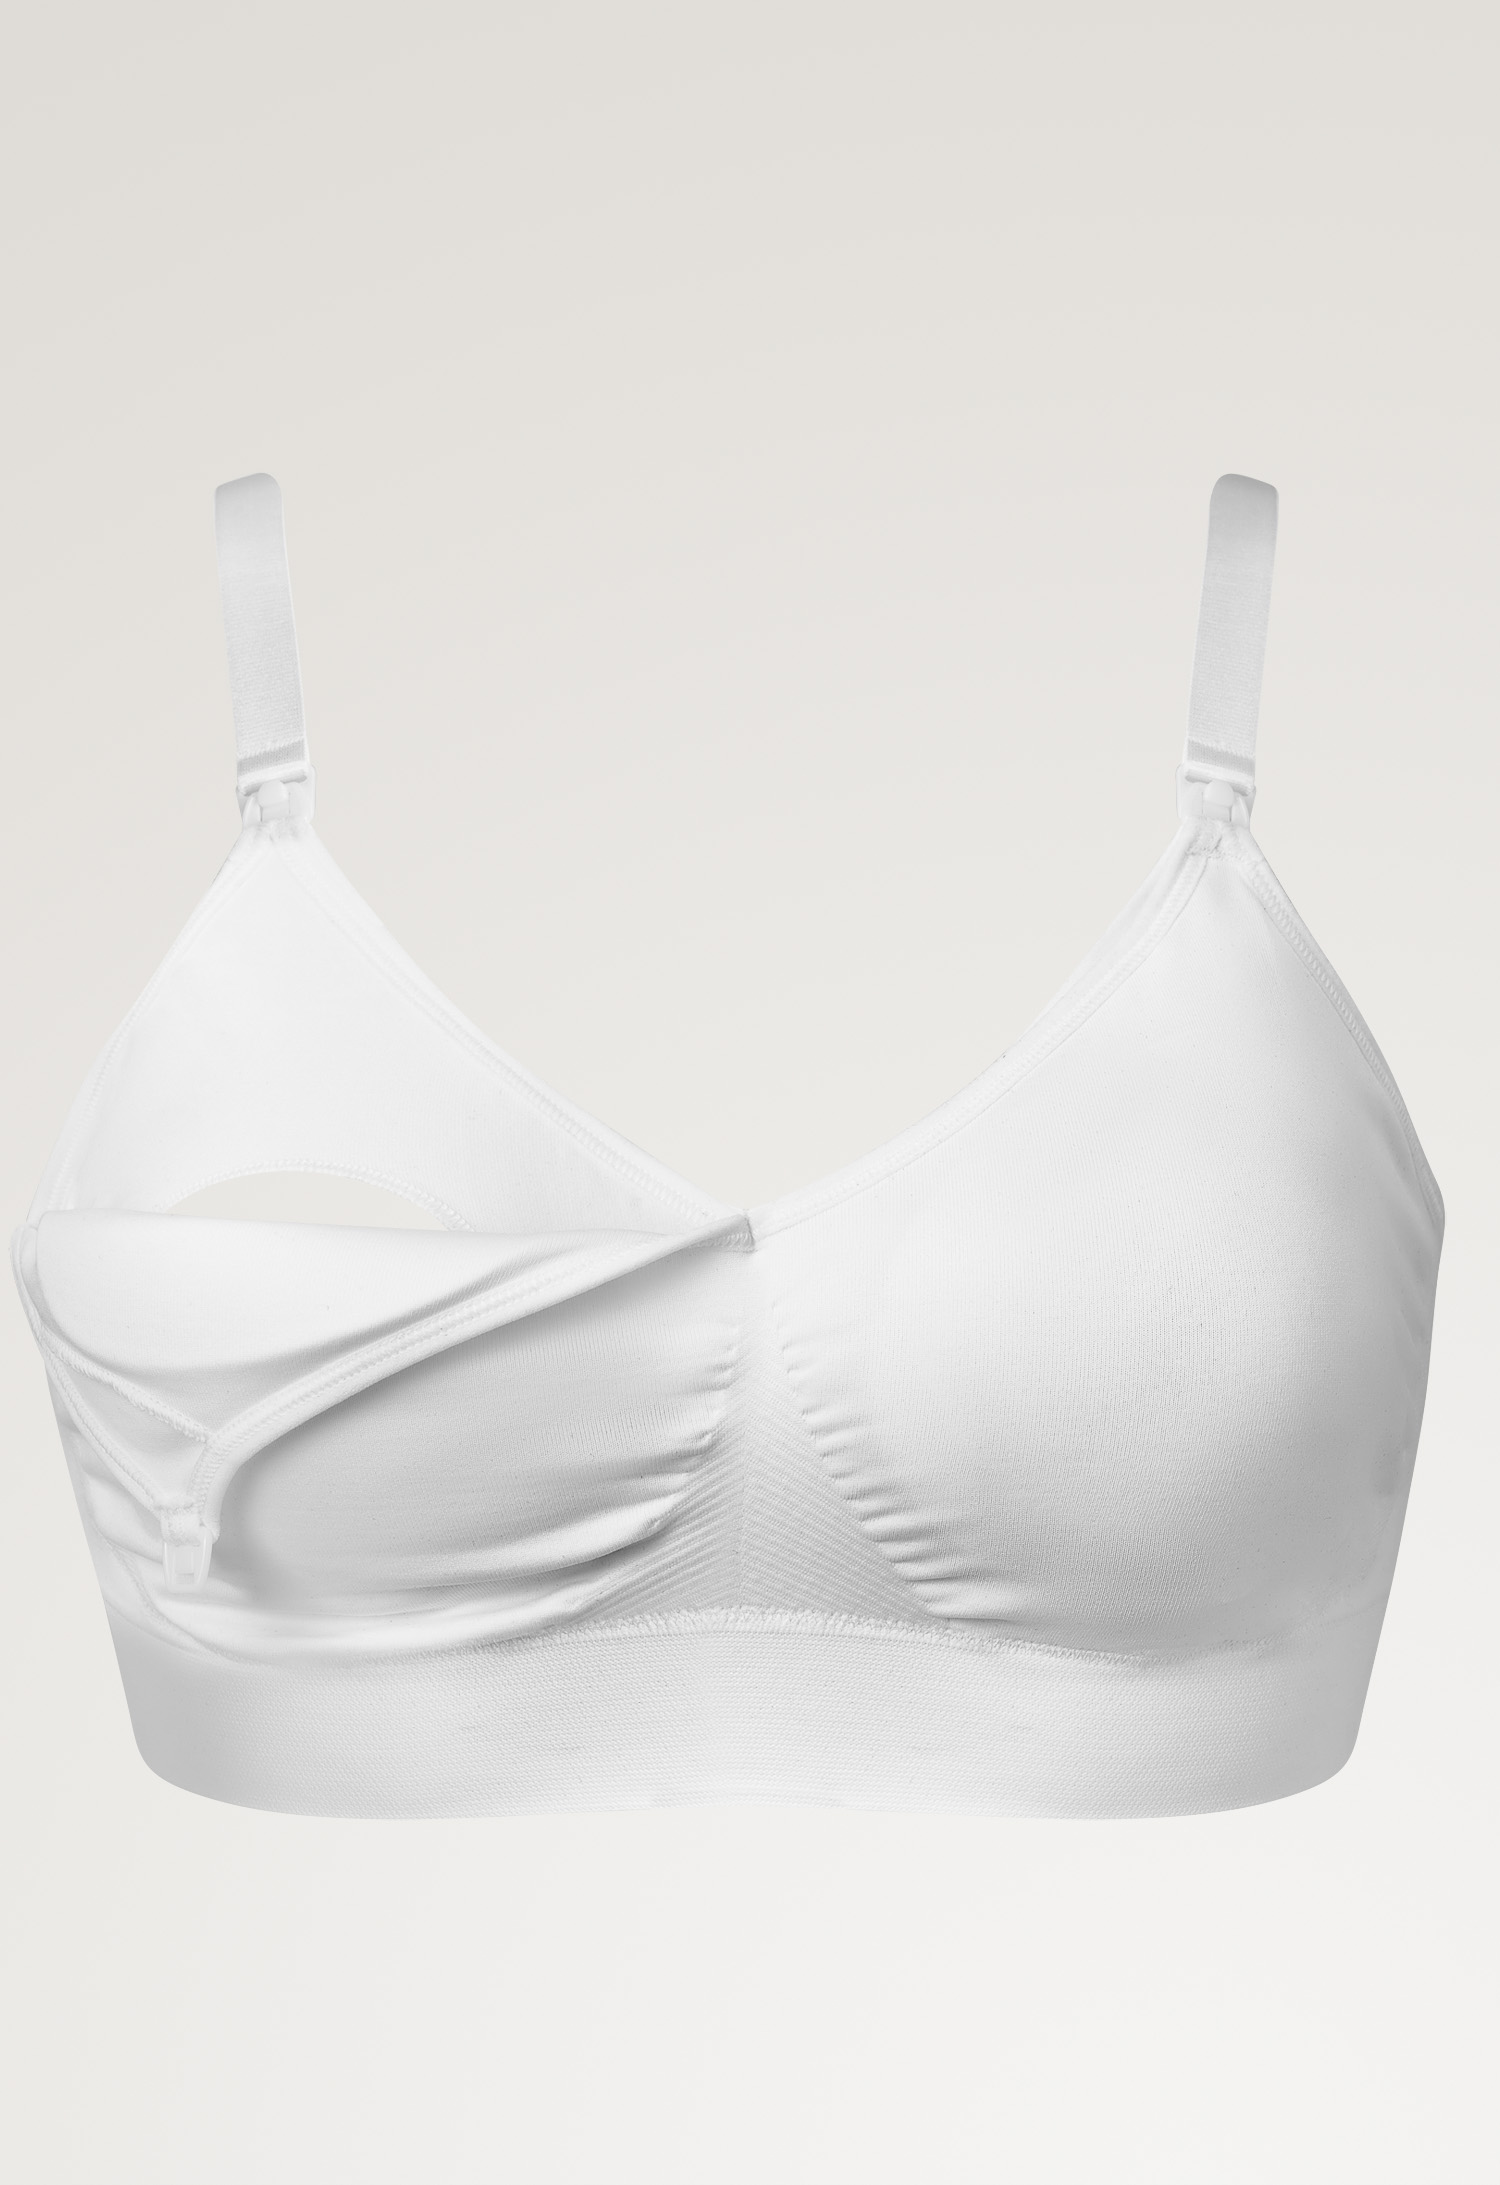 Fast Food T-shirt bra , White L (5) - Maternity underwear / Nursing underwear